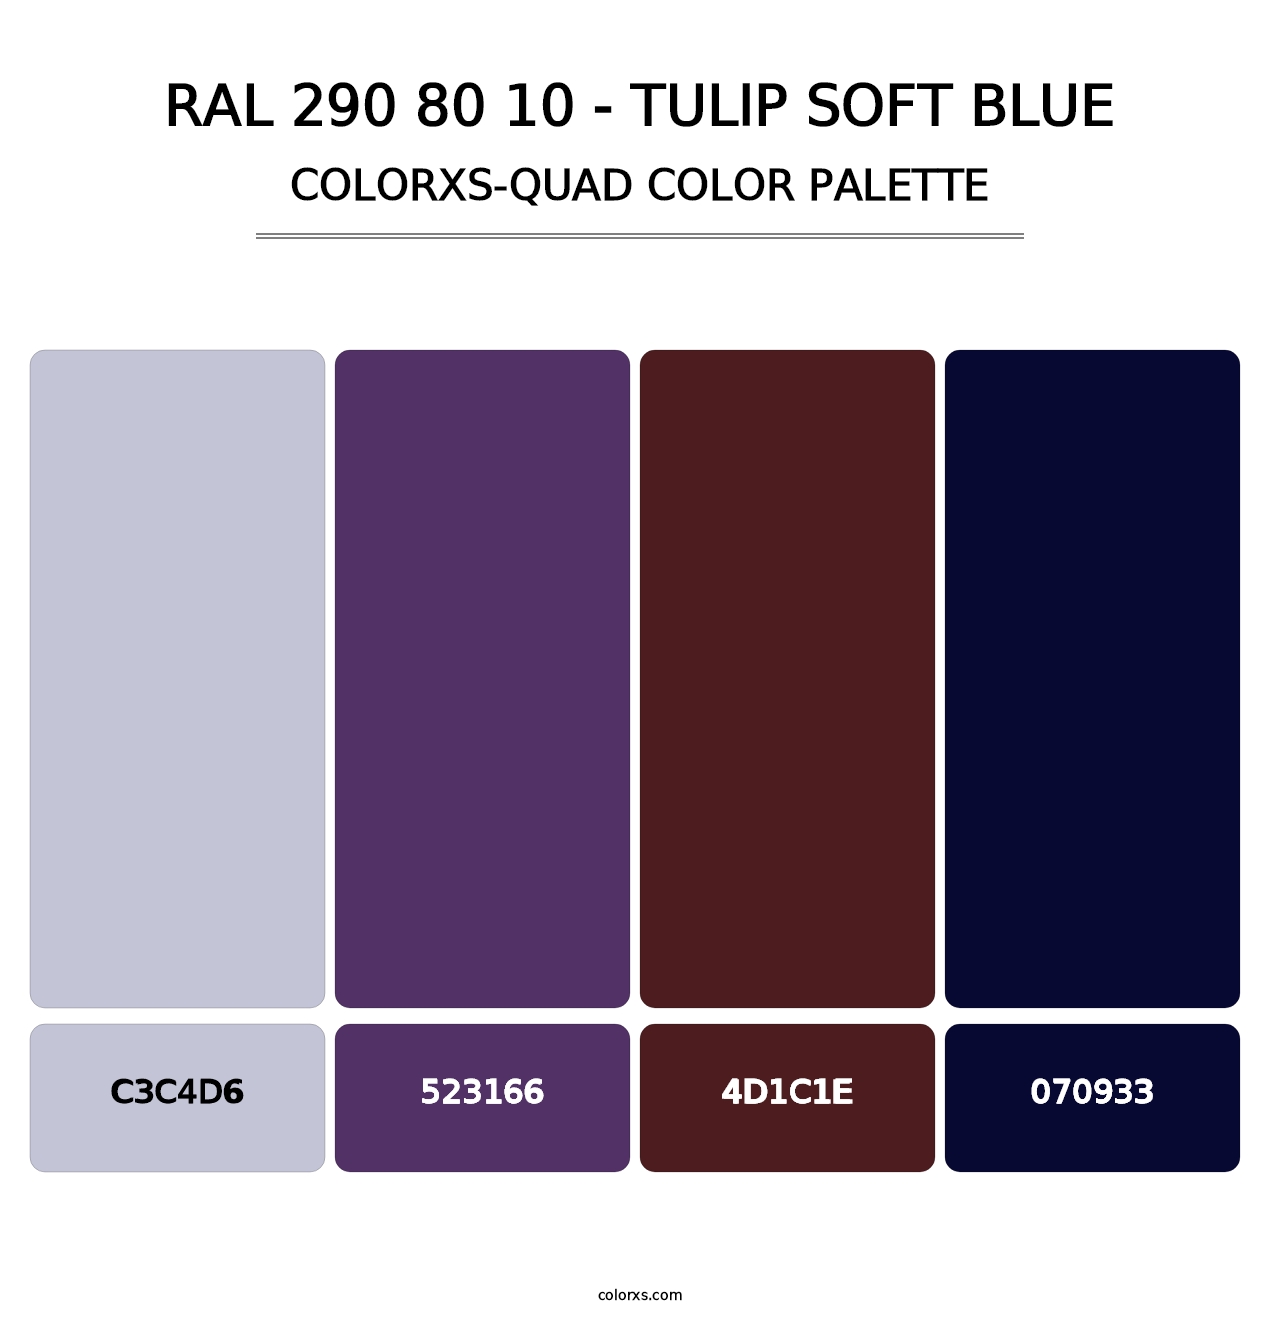 RAL 290 80 10 - Tulip Soft Blue - Colorxs Quad Palette